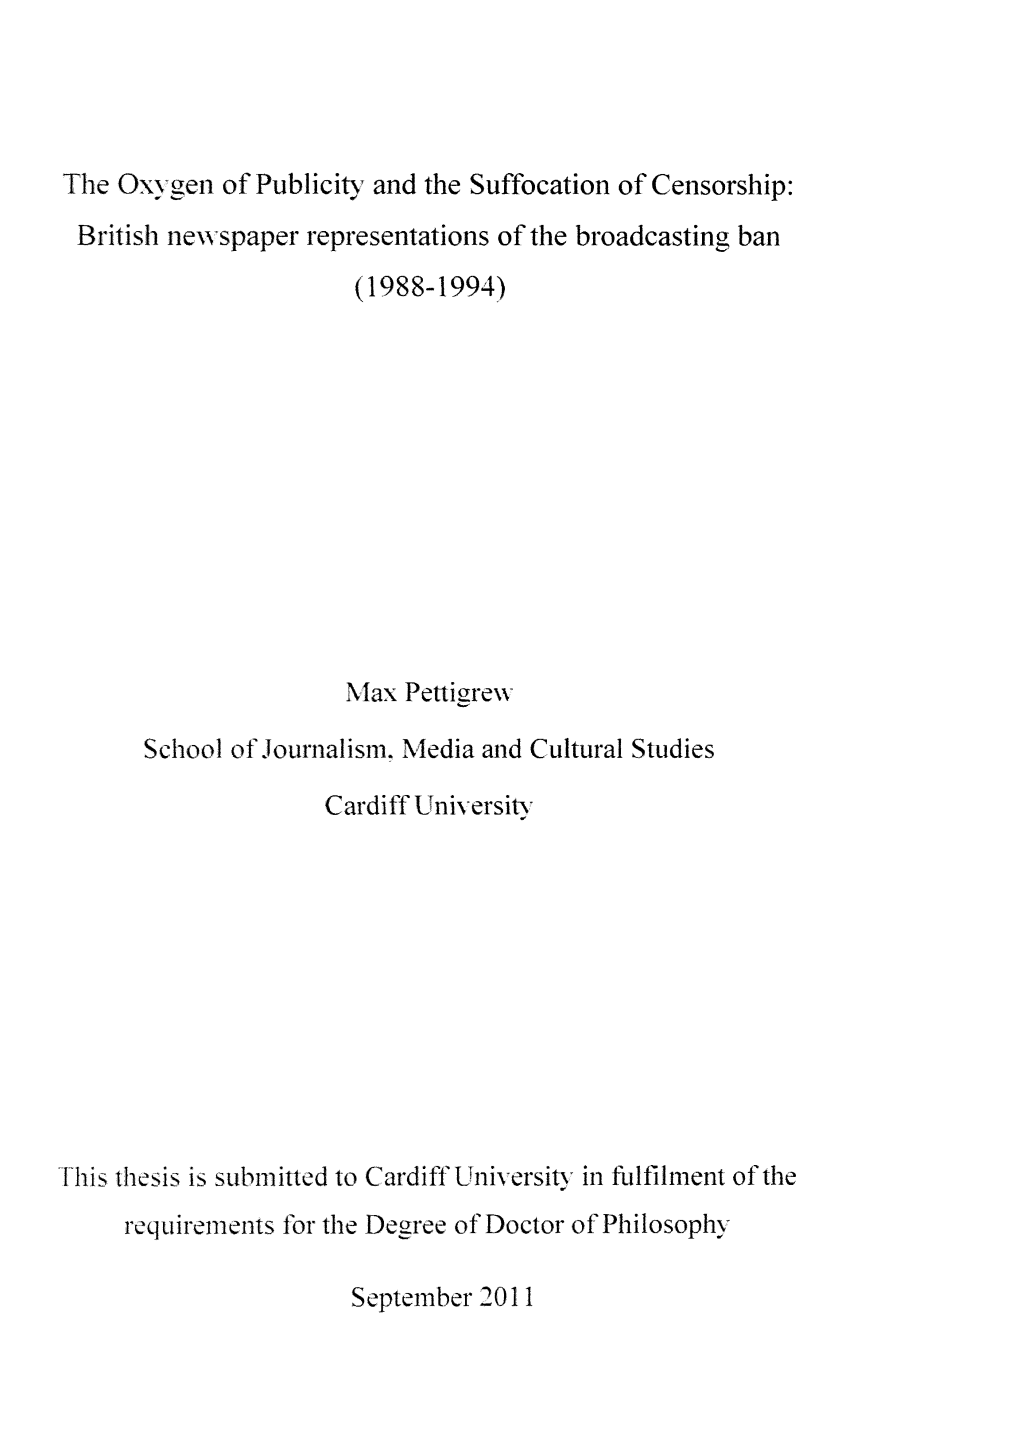 British Newspaper Representations of the Broadcasting Ban Max Petti E